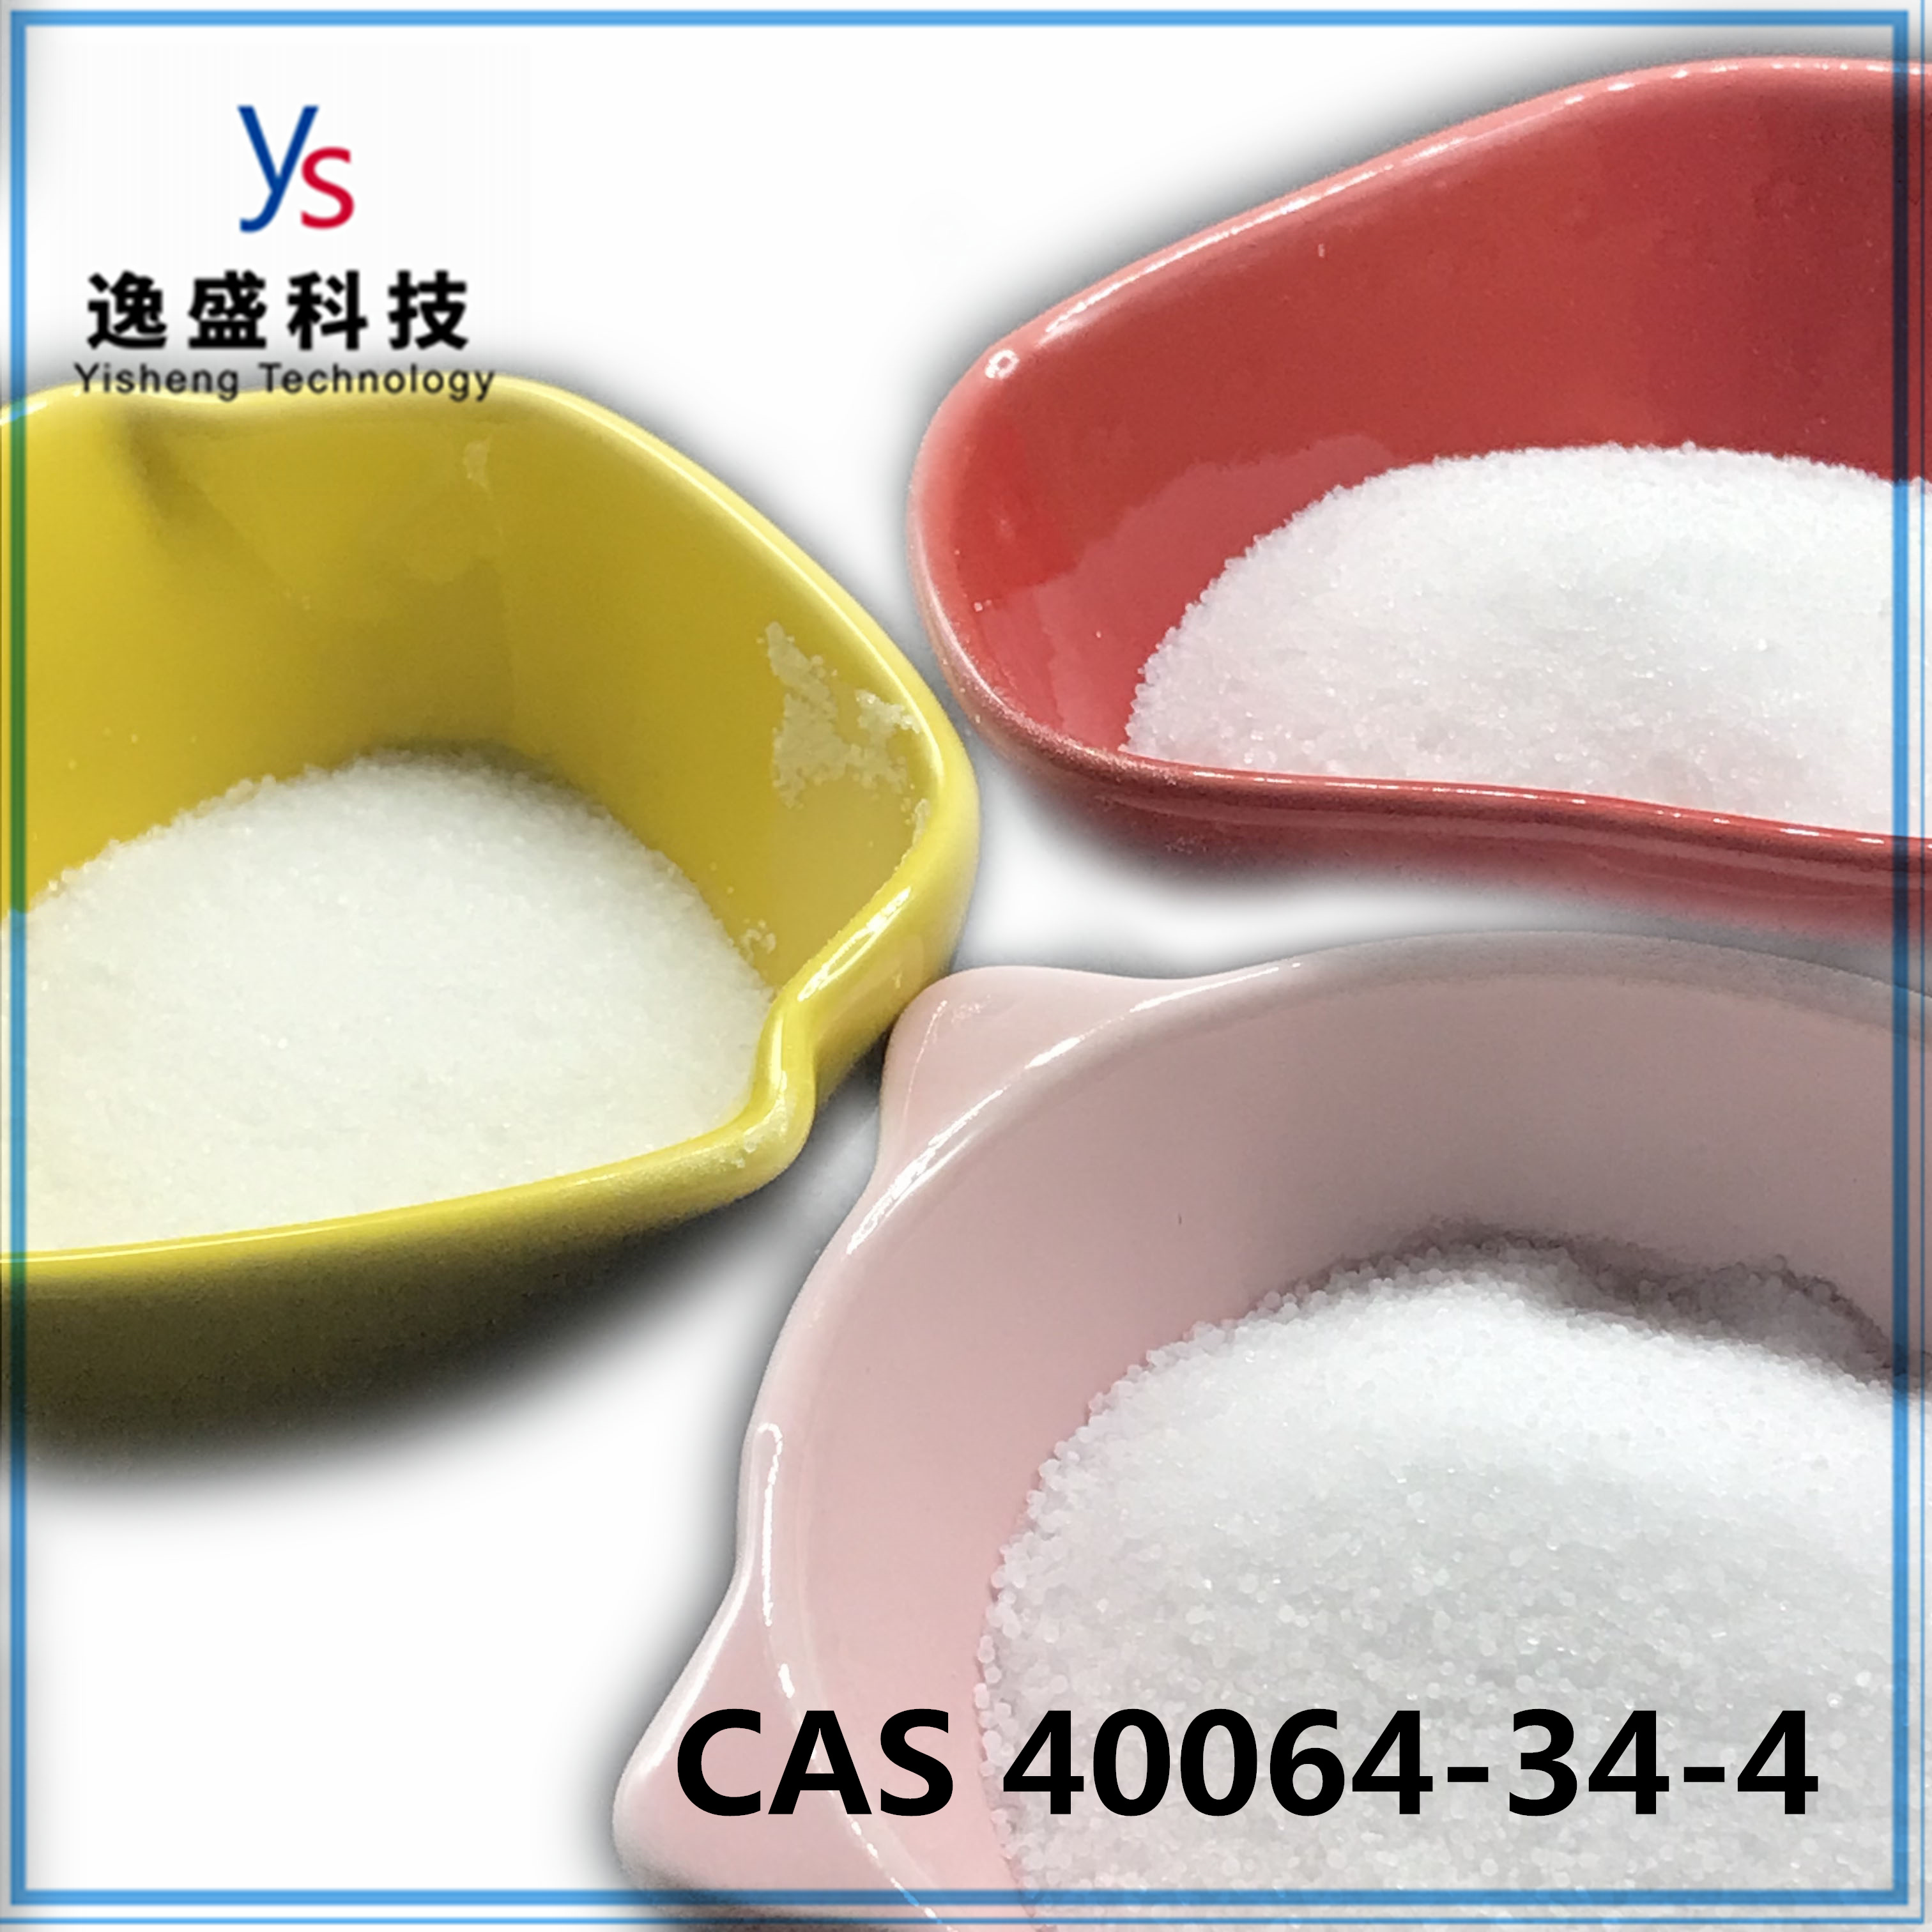 Aangepast gezondheidswit 4 4-piperidinediolhydrochloride CAS 40064-34-4